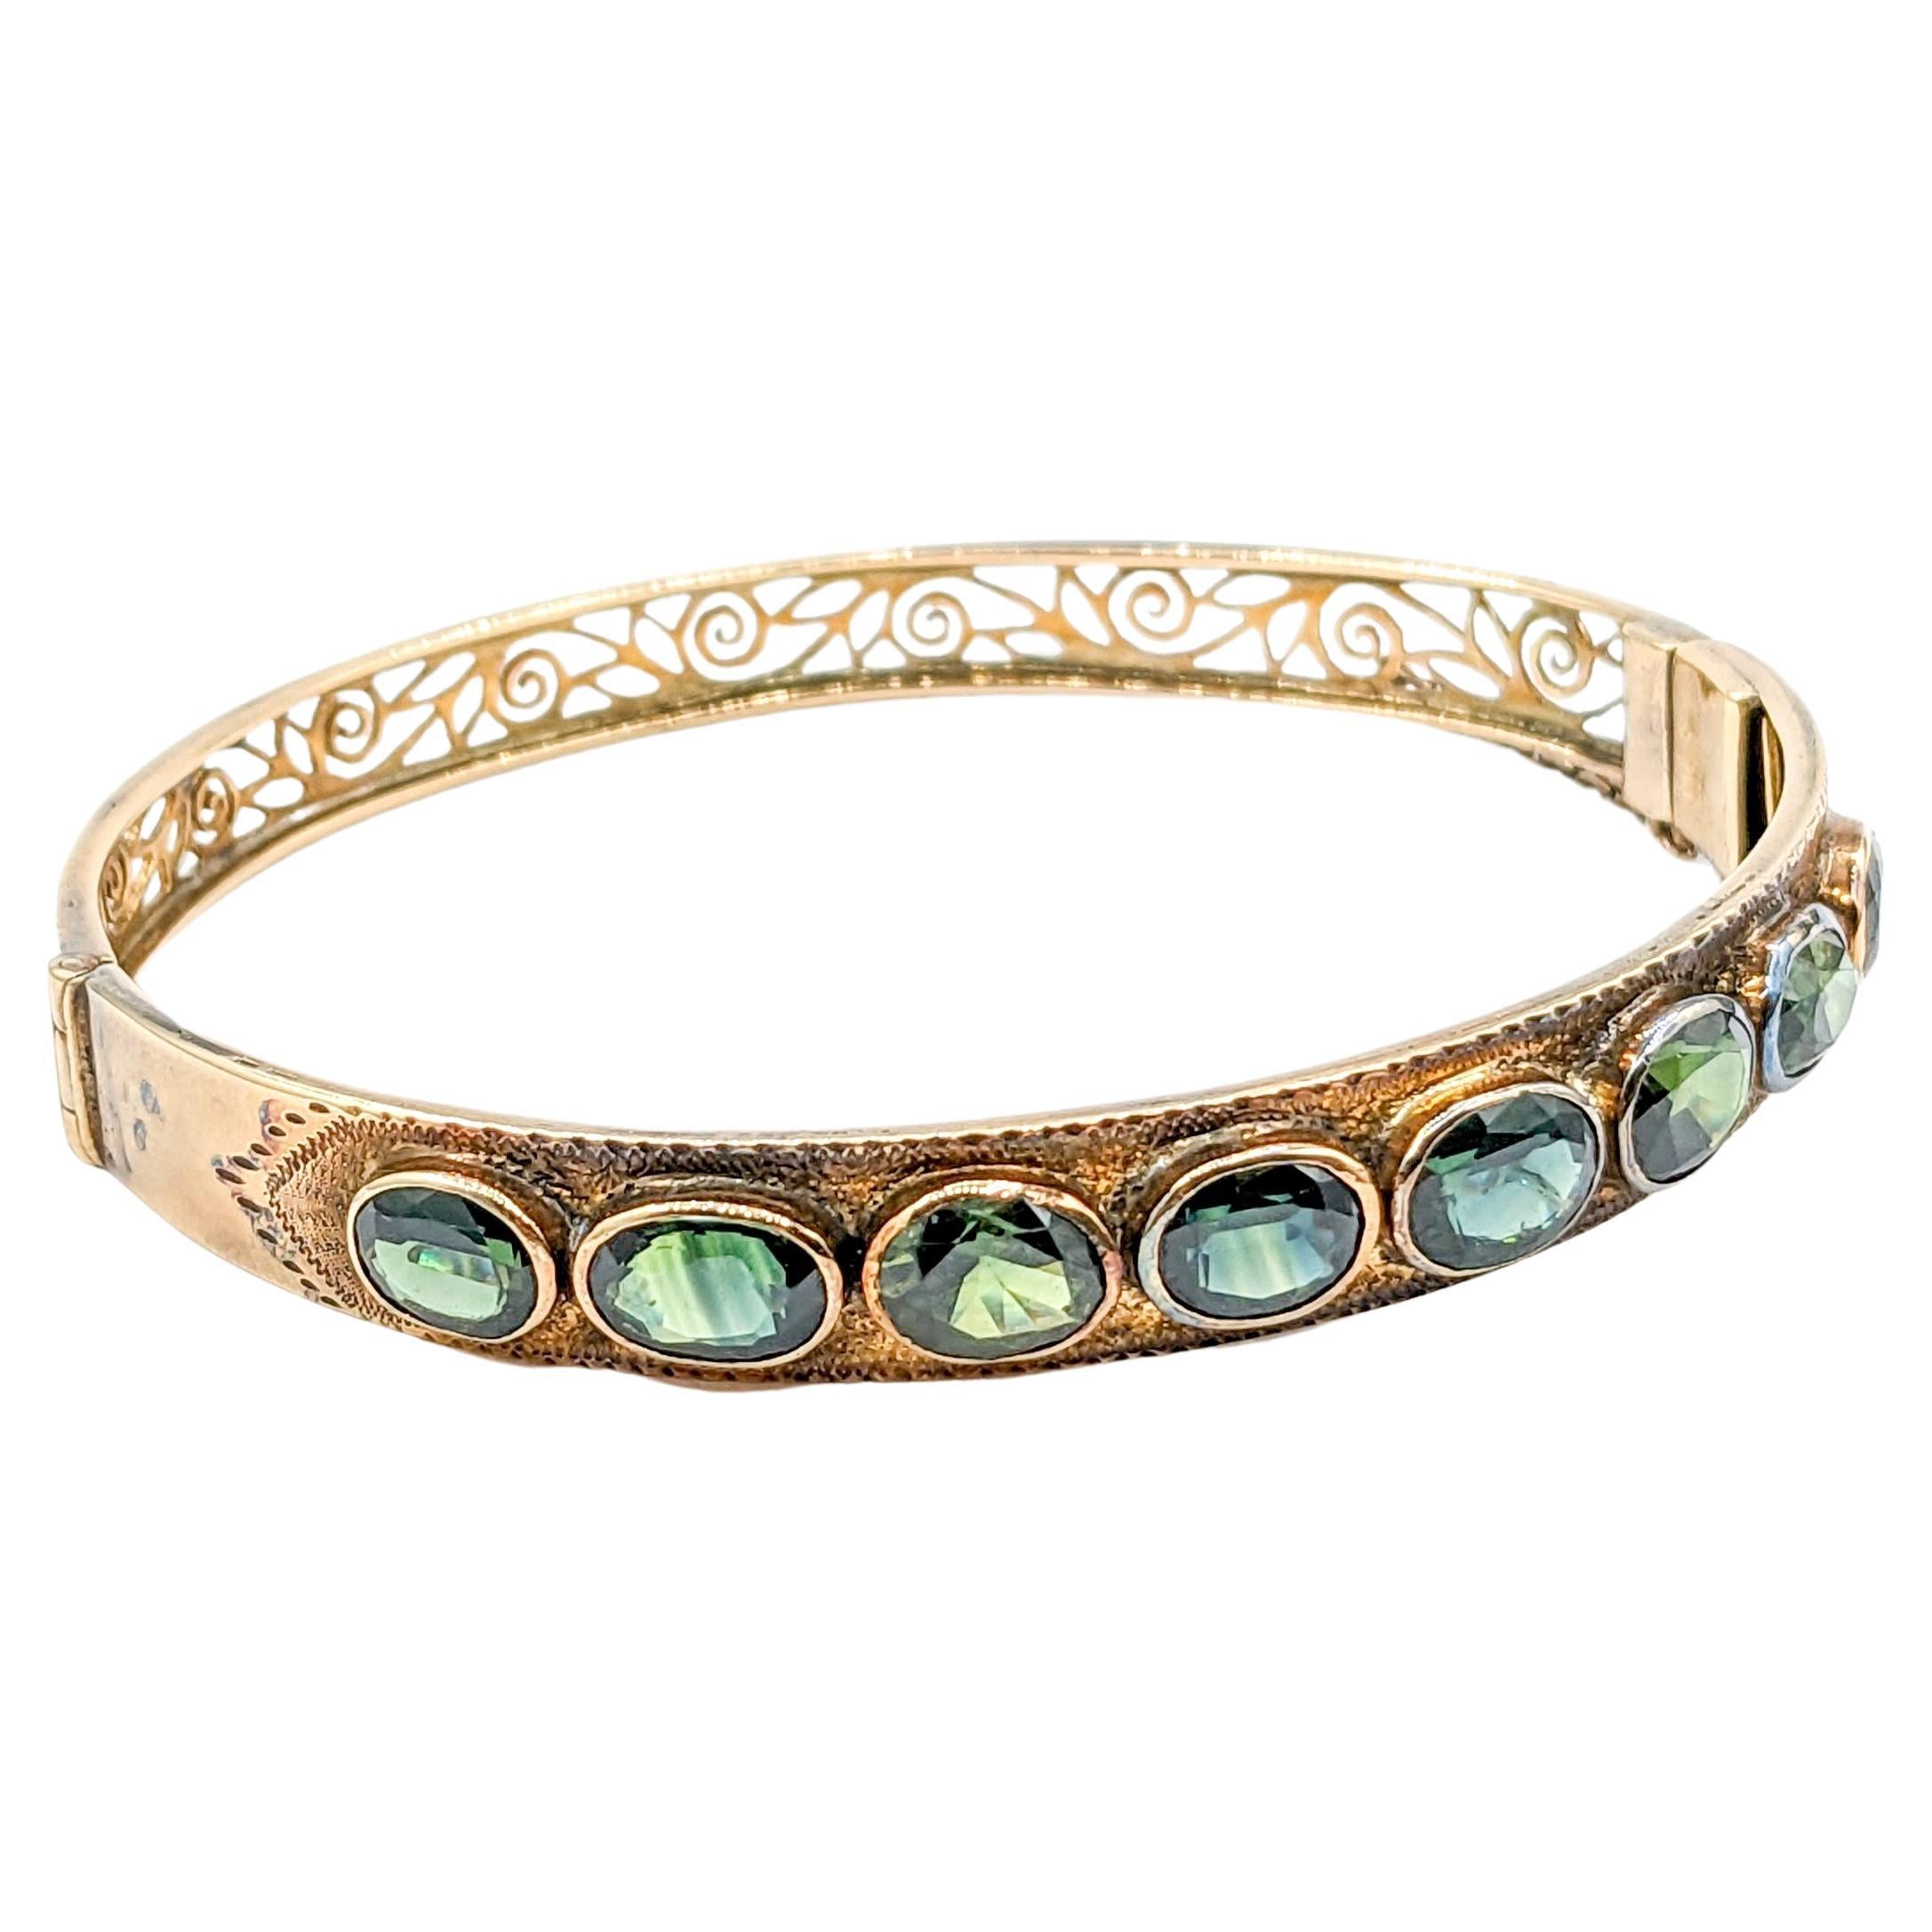 Vintage 10.1ctw Oval Teal Sapphire Bangle Bracelet in 18k gold